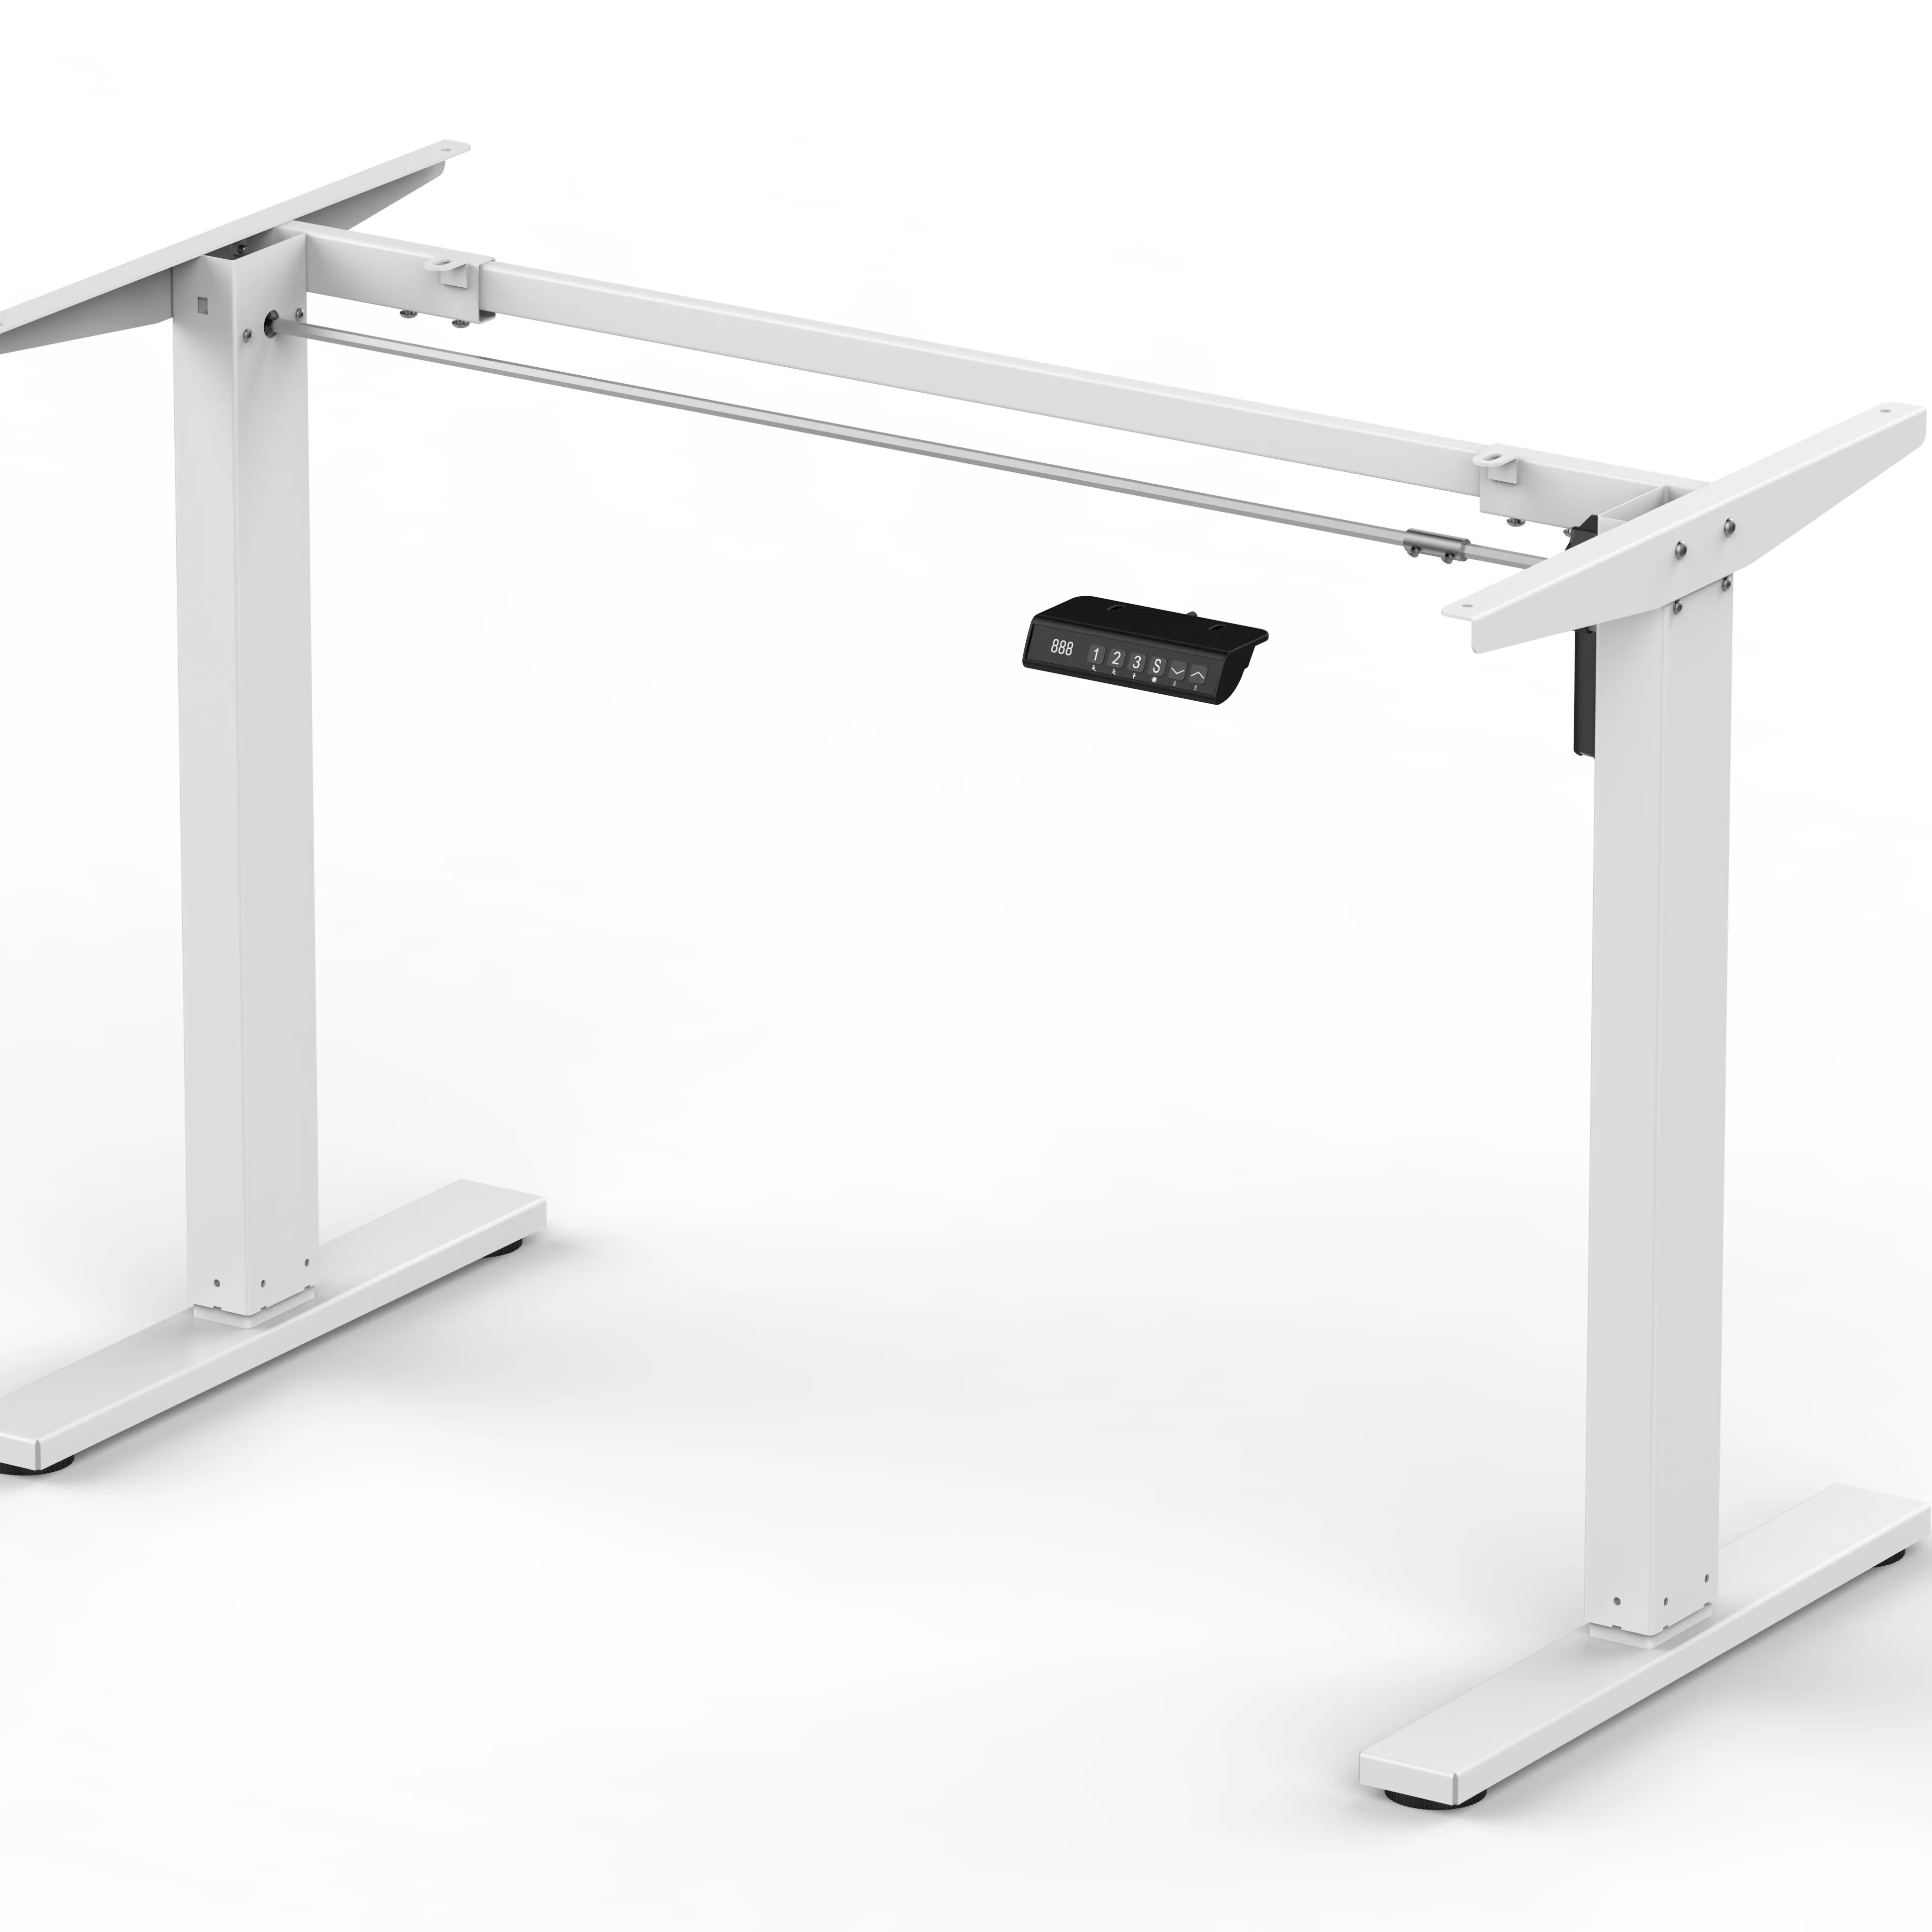 Fabrika doğrudan ihracat ucuz ayarlanabilir yükseklik masası OEM ODM alüminyum alaşım sıcak galvanizleme otomatik bilgisayar ayarlanabilir masa